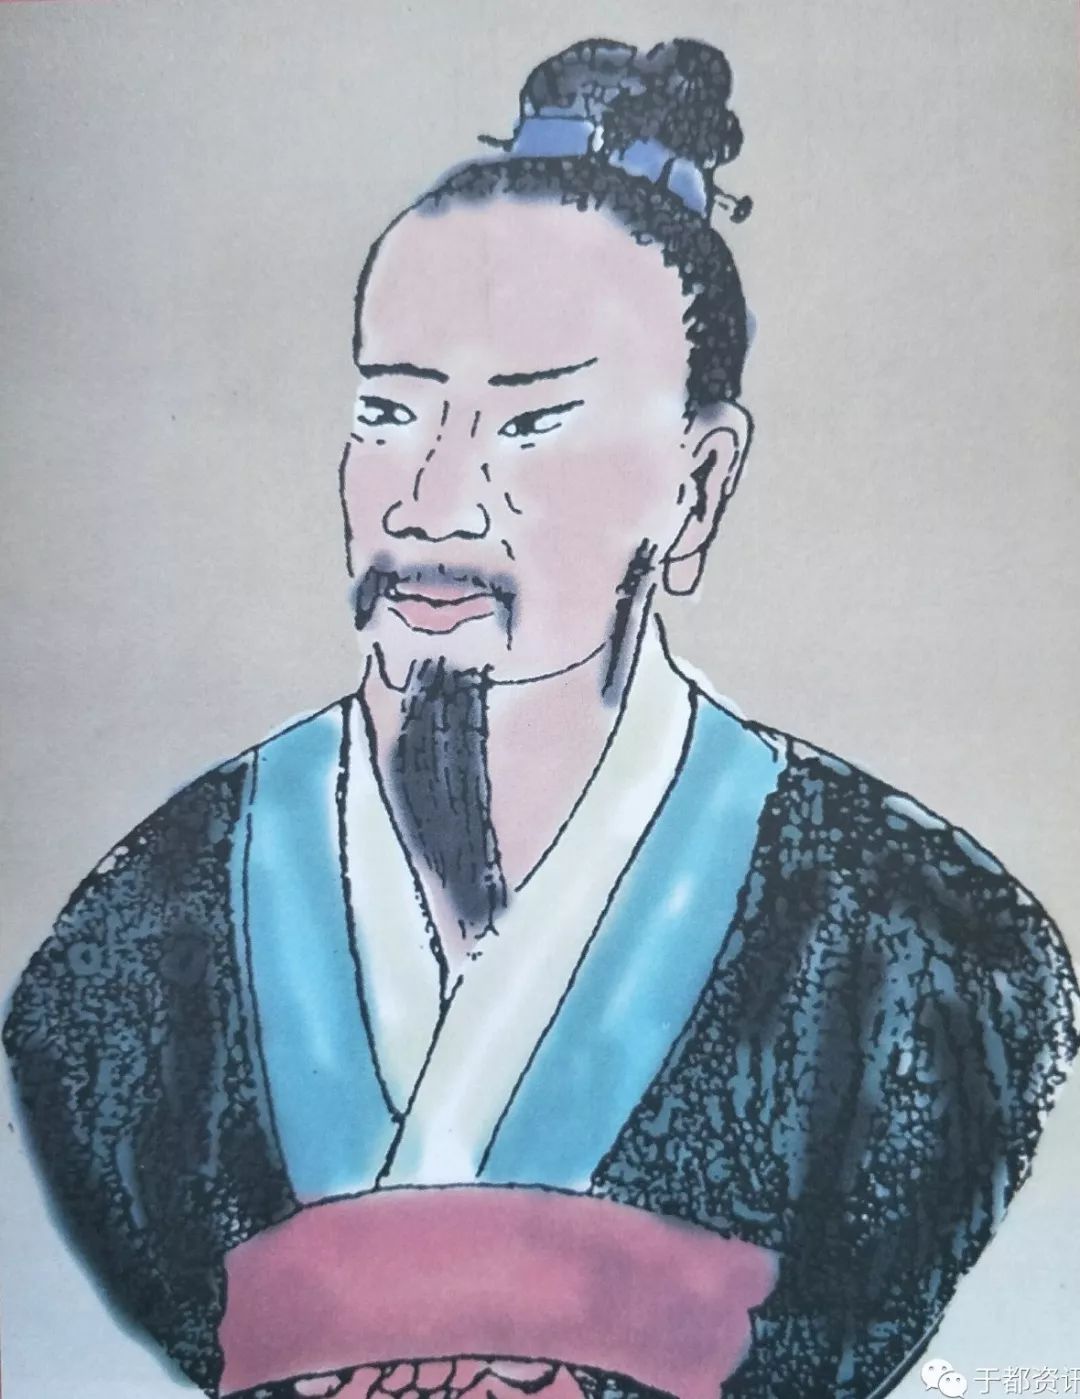 (刘累画像)刘累是远古部落联盟陶唐氏首领尧的后裔,是被史学界所认同